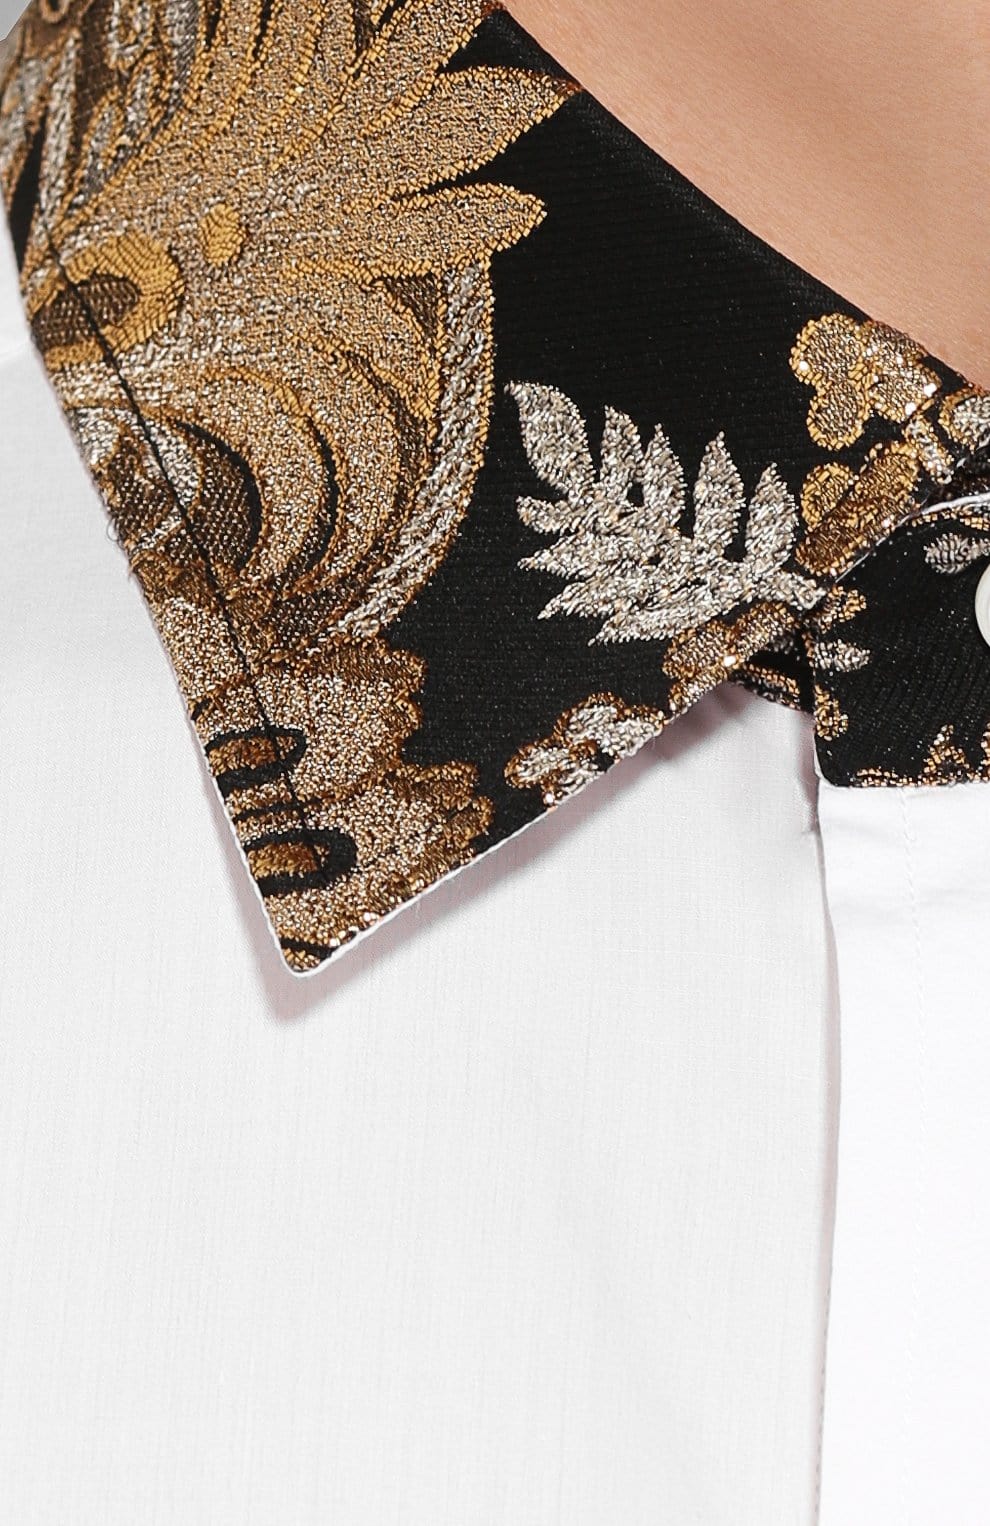 Dolce & Gabbana Shirt With Jacquard Collar